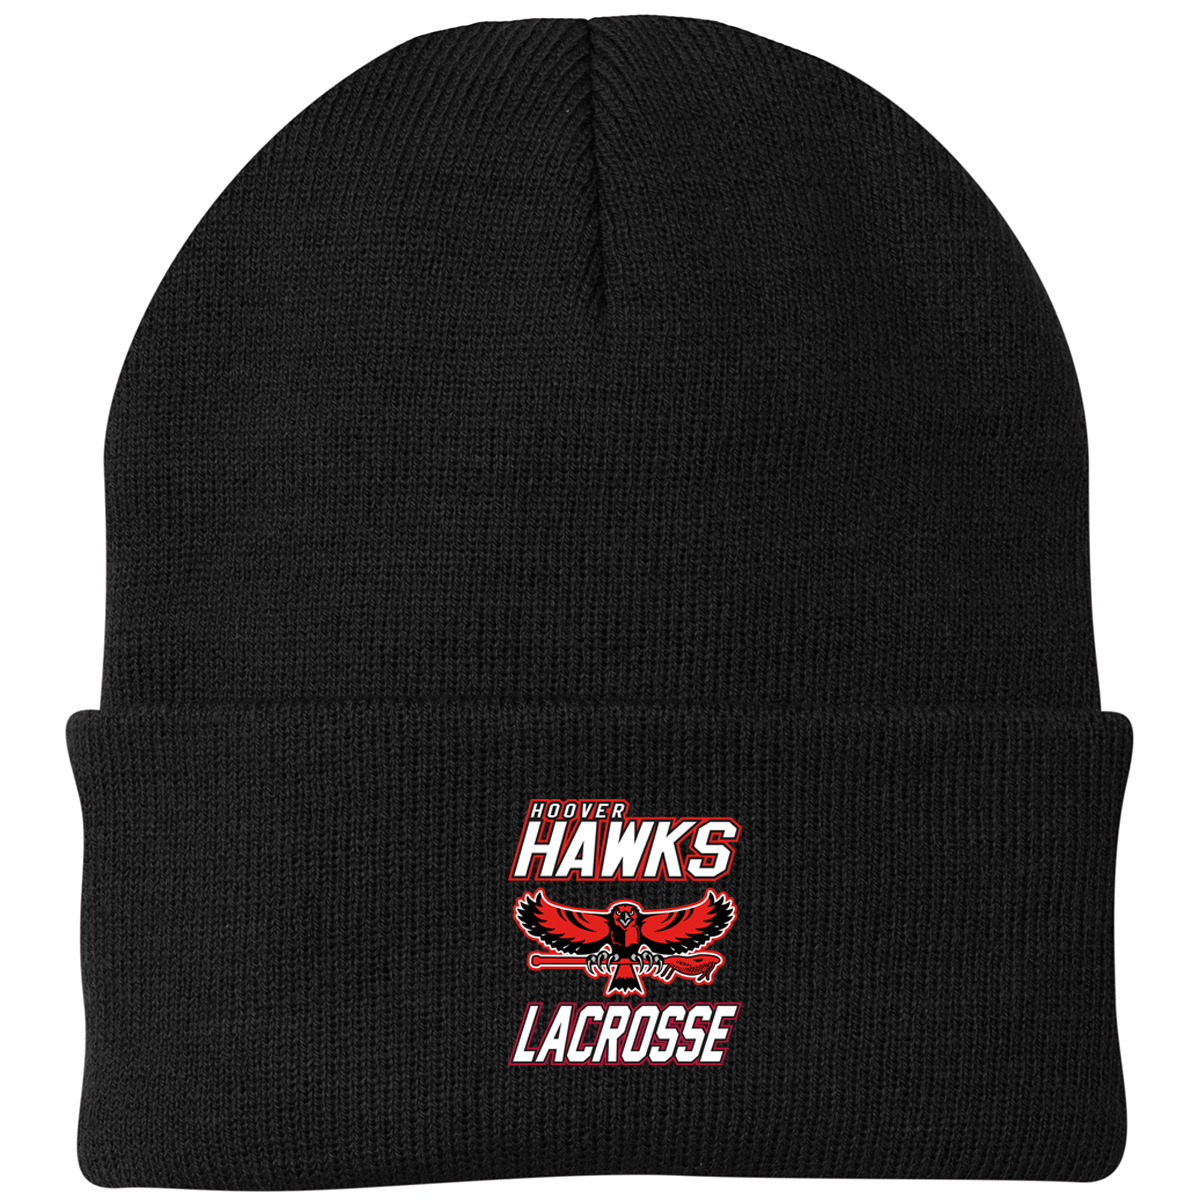 Hawks Lacrosse Knit Beanie